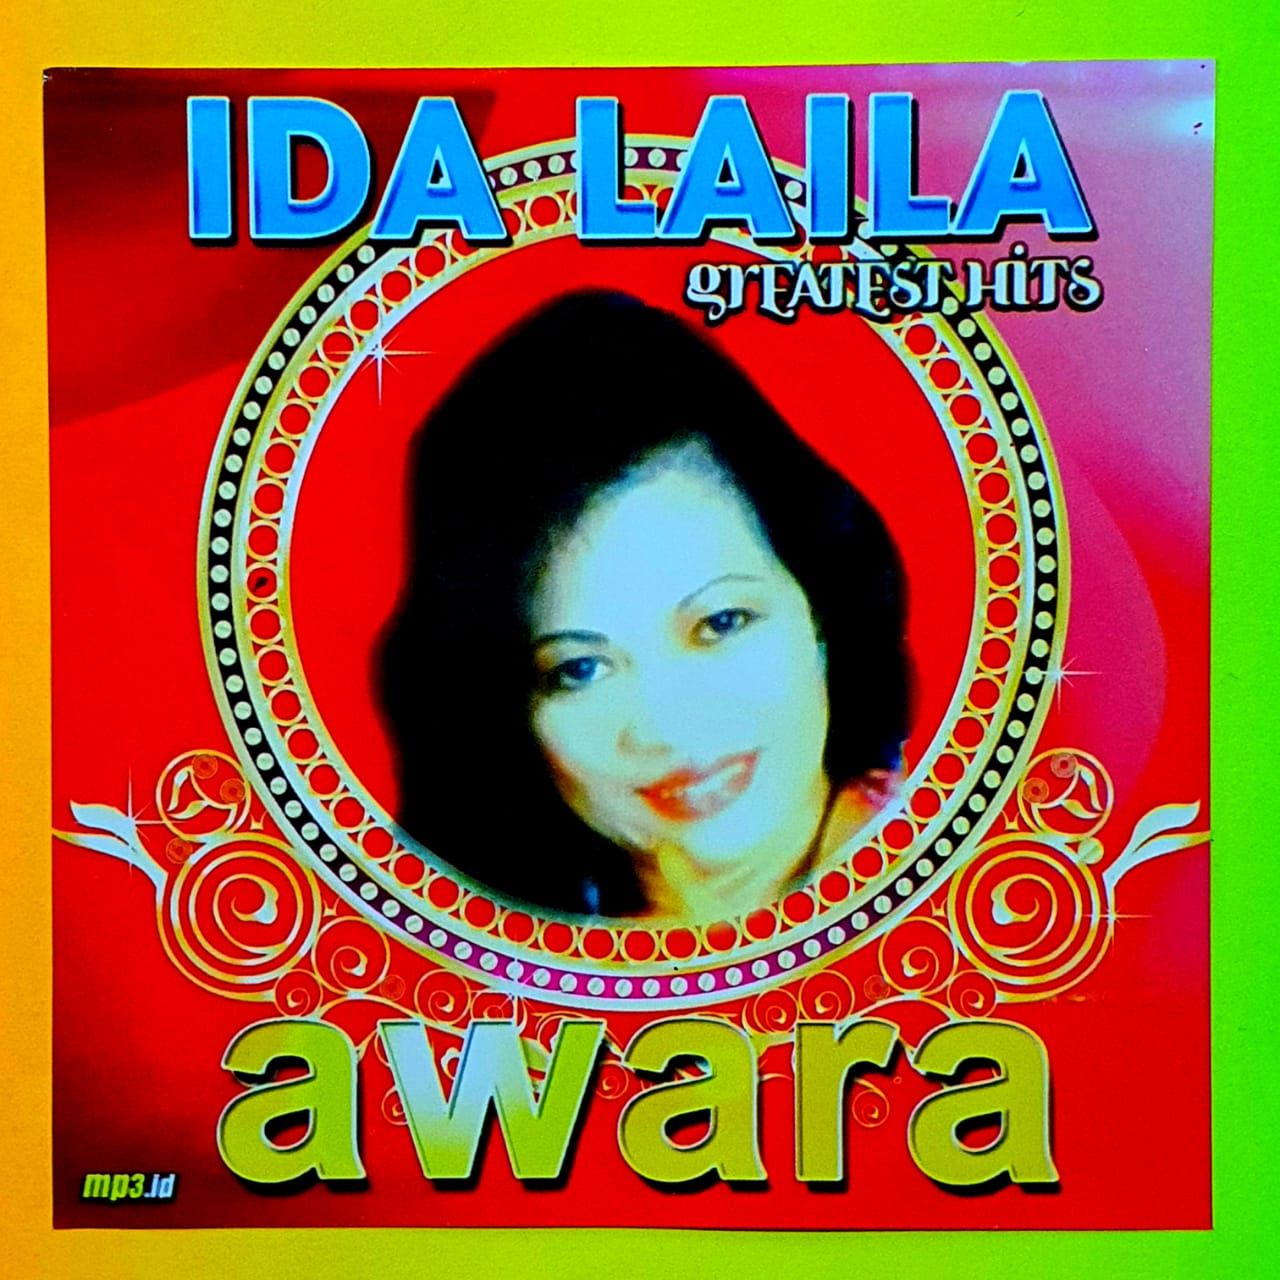 download lagu dangdut koplo palapa terbaru 2013